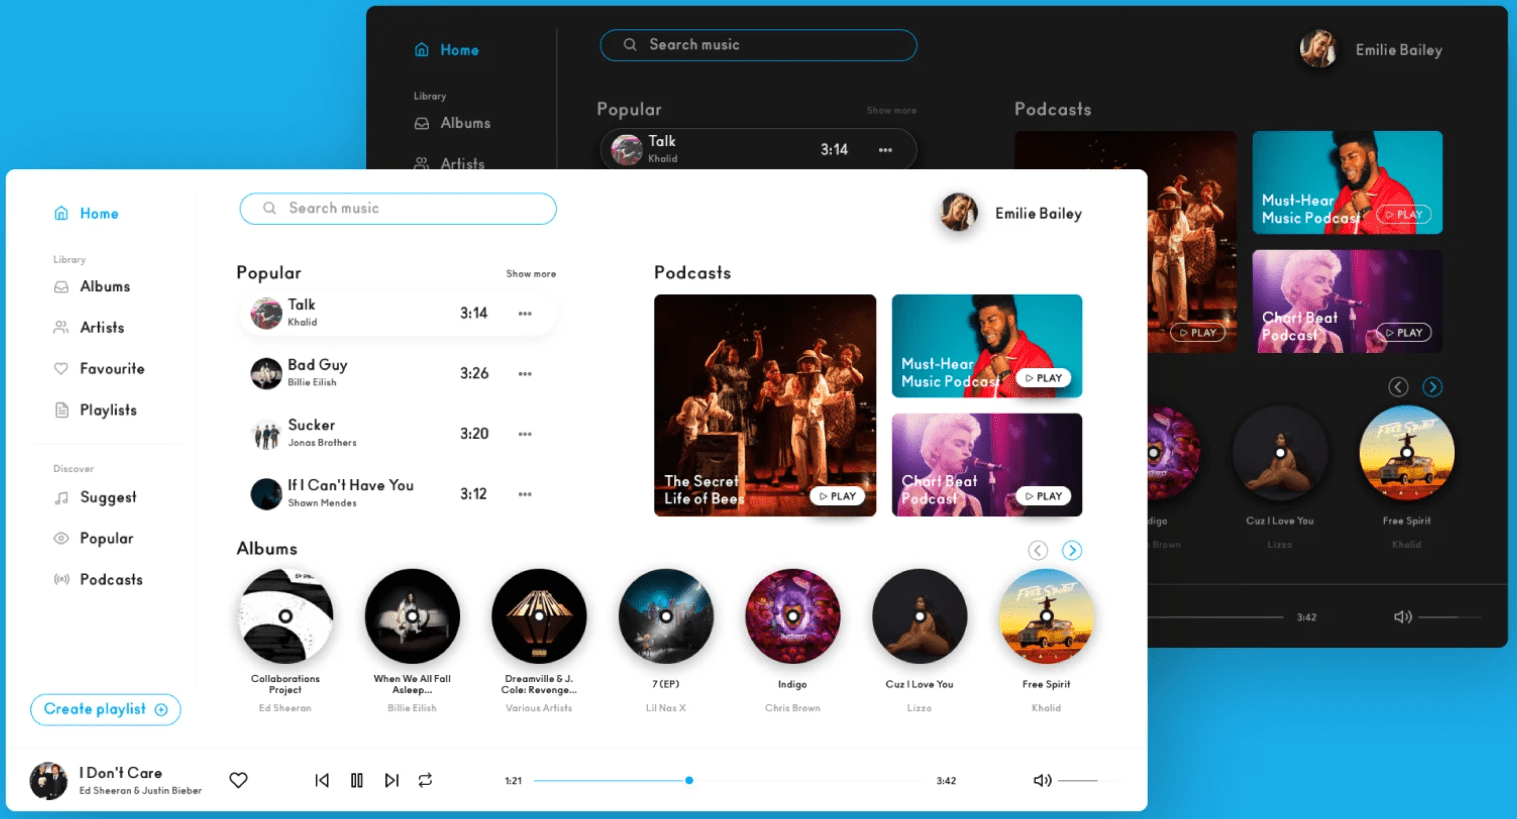 summarydesign's-music-platform